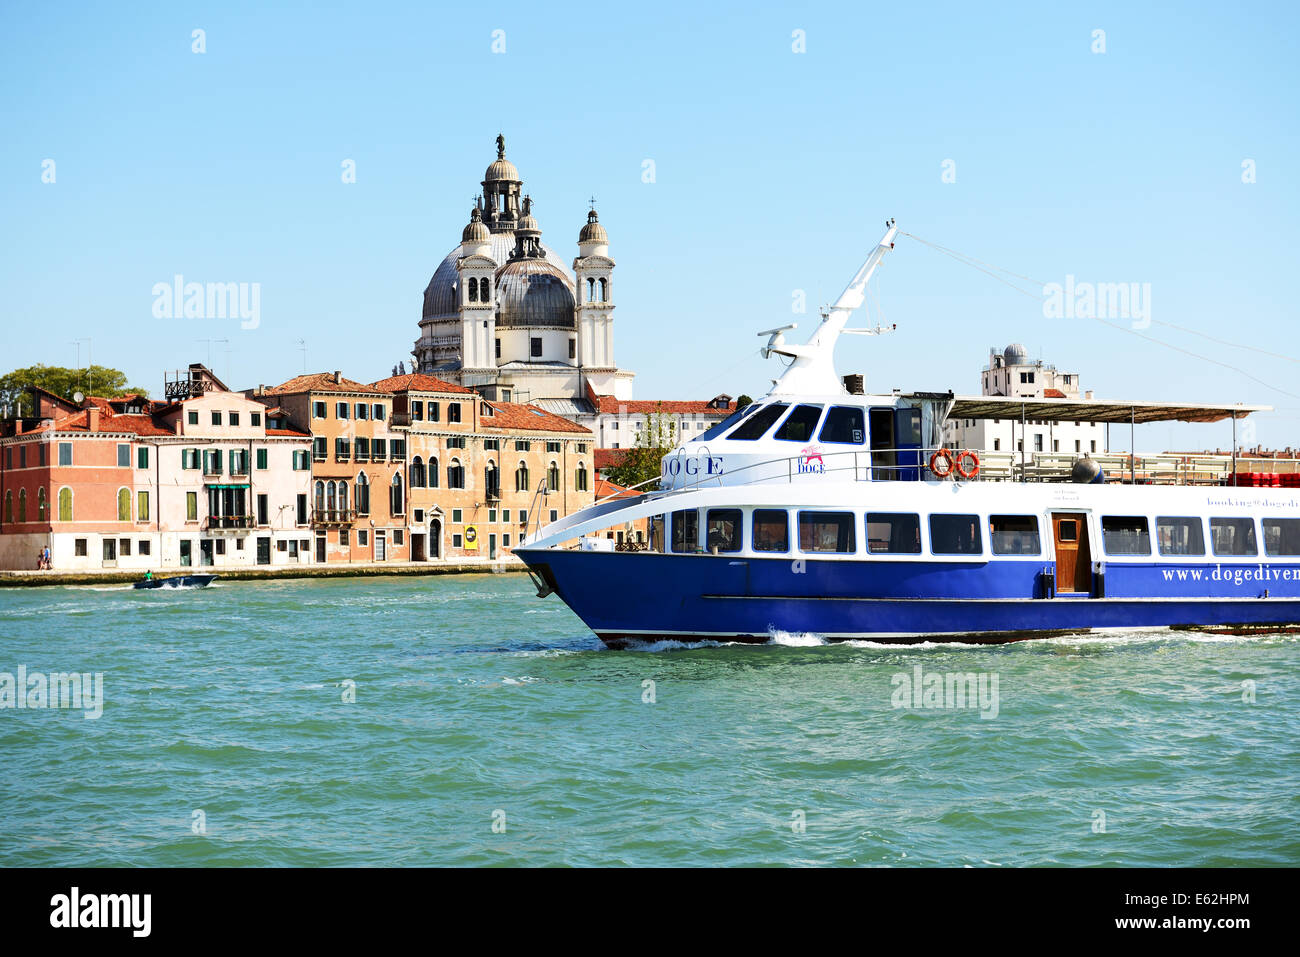 Le navire à passagers avec les touristes est le canal d'eau, Venise, Italie Banque D'Images